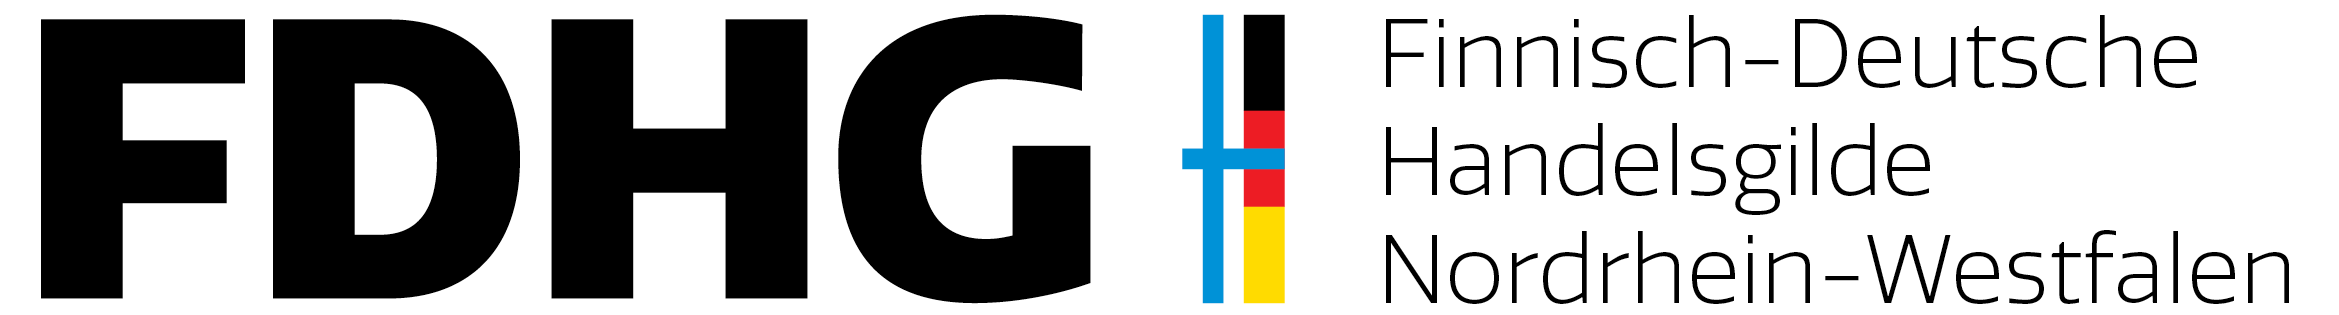 FDHG-NRW Logo